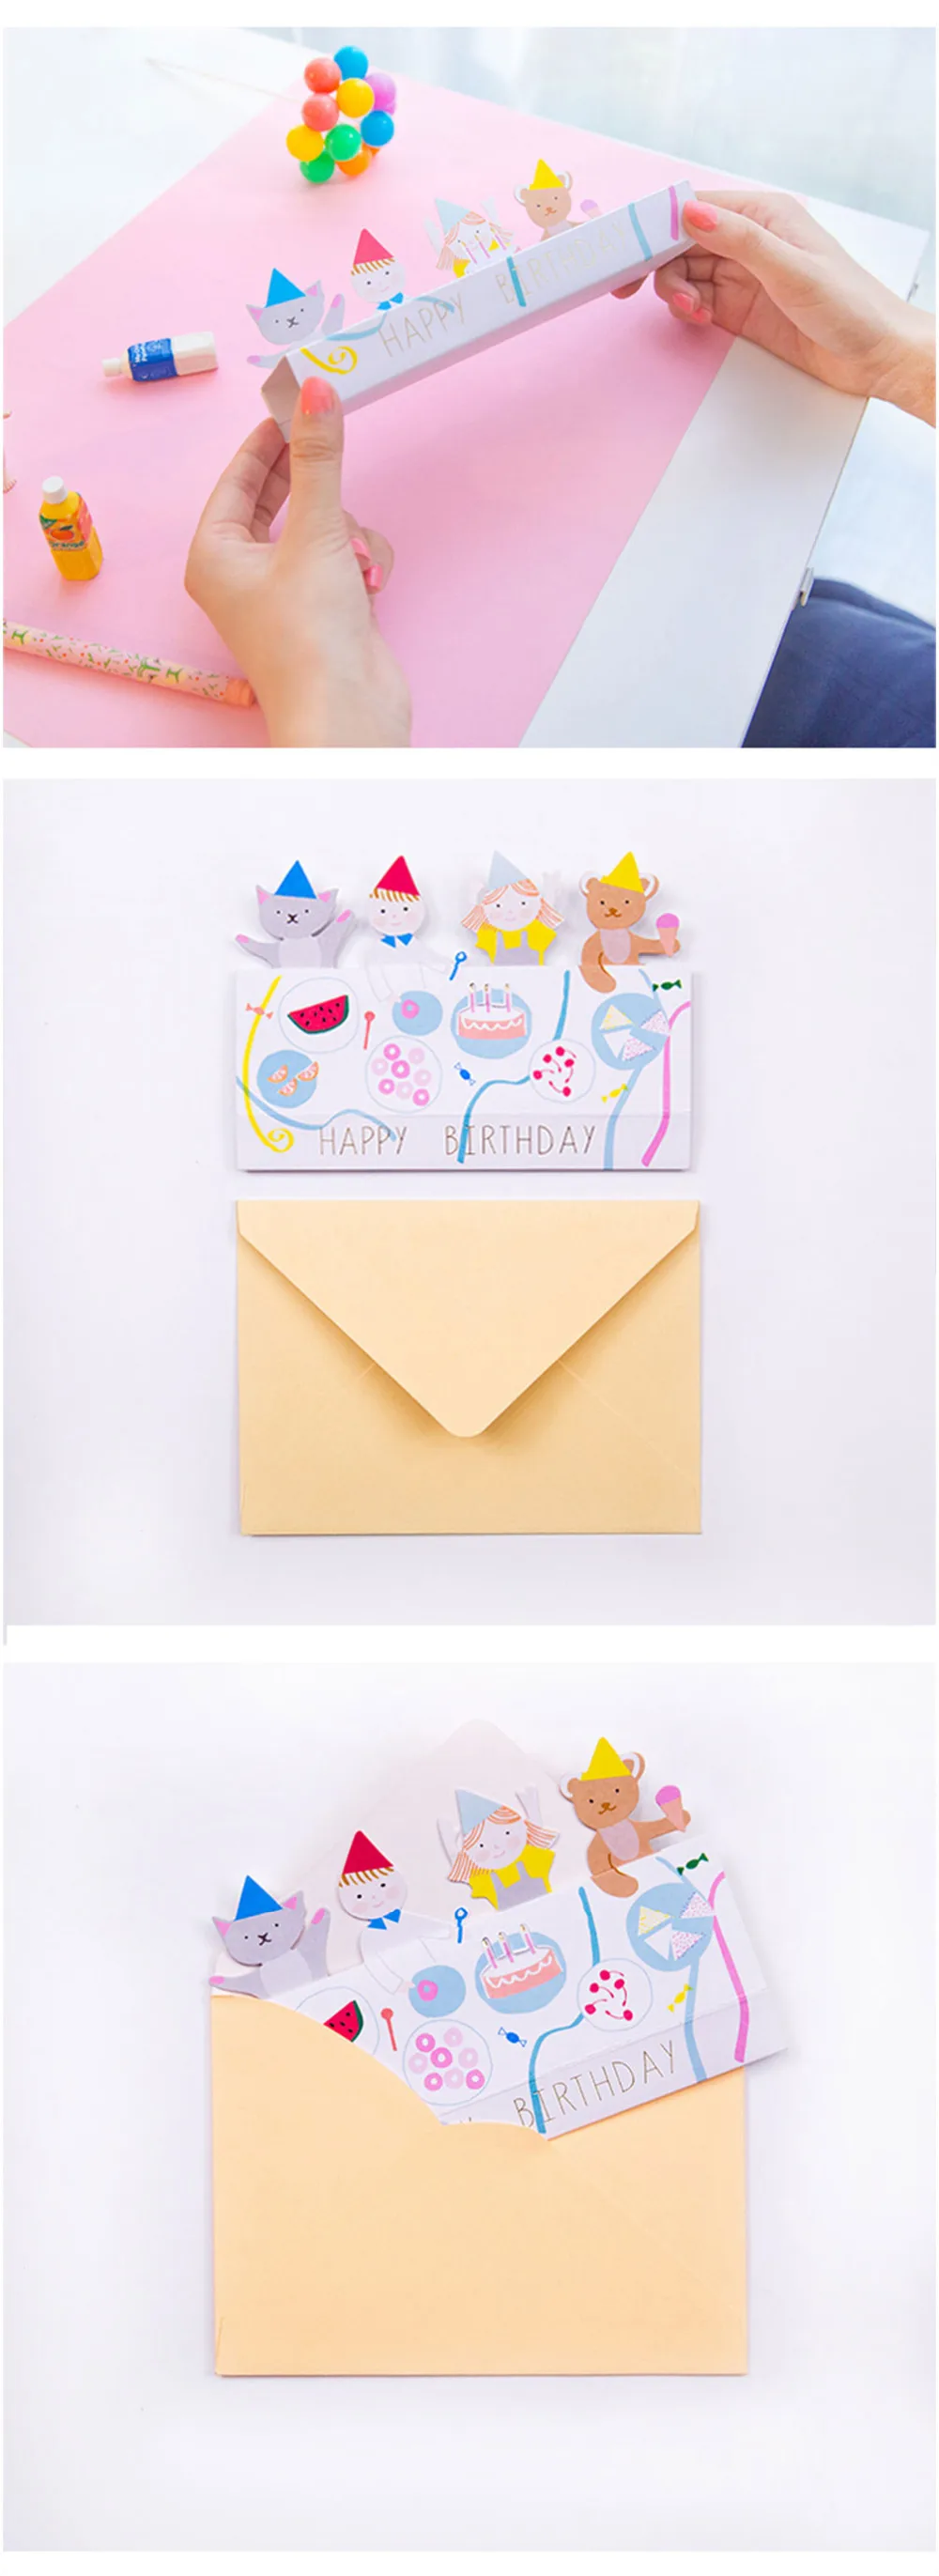 1 компл. Хан издание мультфильм животных день рождения карты конверт каваи 3D Творческий поздравительная открытка с сообщением